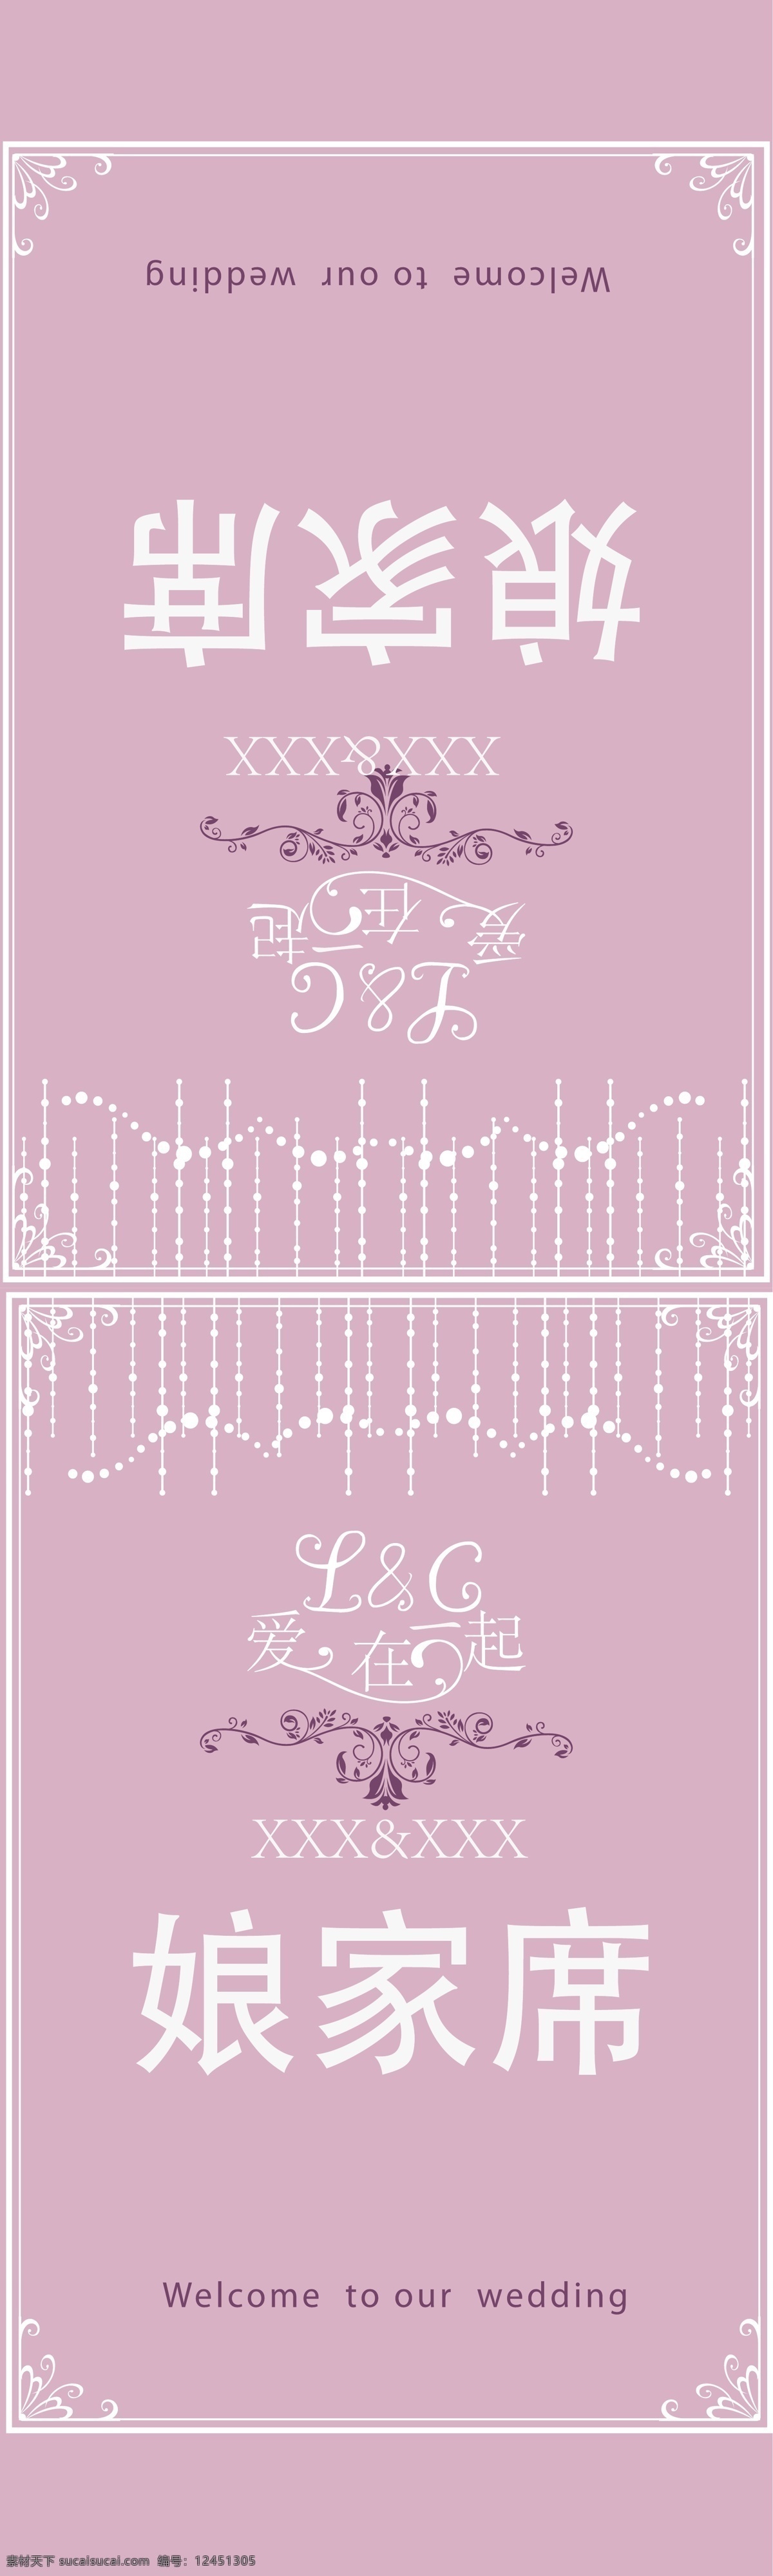 婚庆桌卡设计 桌卡 桌卡设计 婚礼 婚礼设计 对折桌卡 紫色桌卡 其他设计 矢量